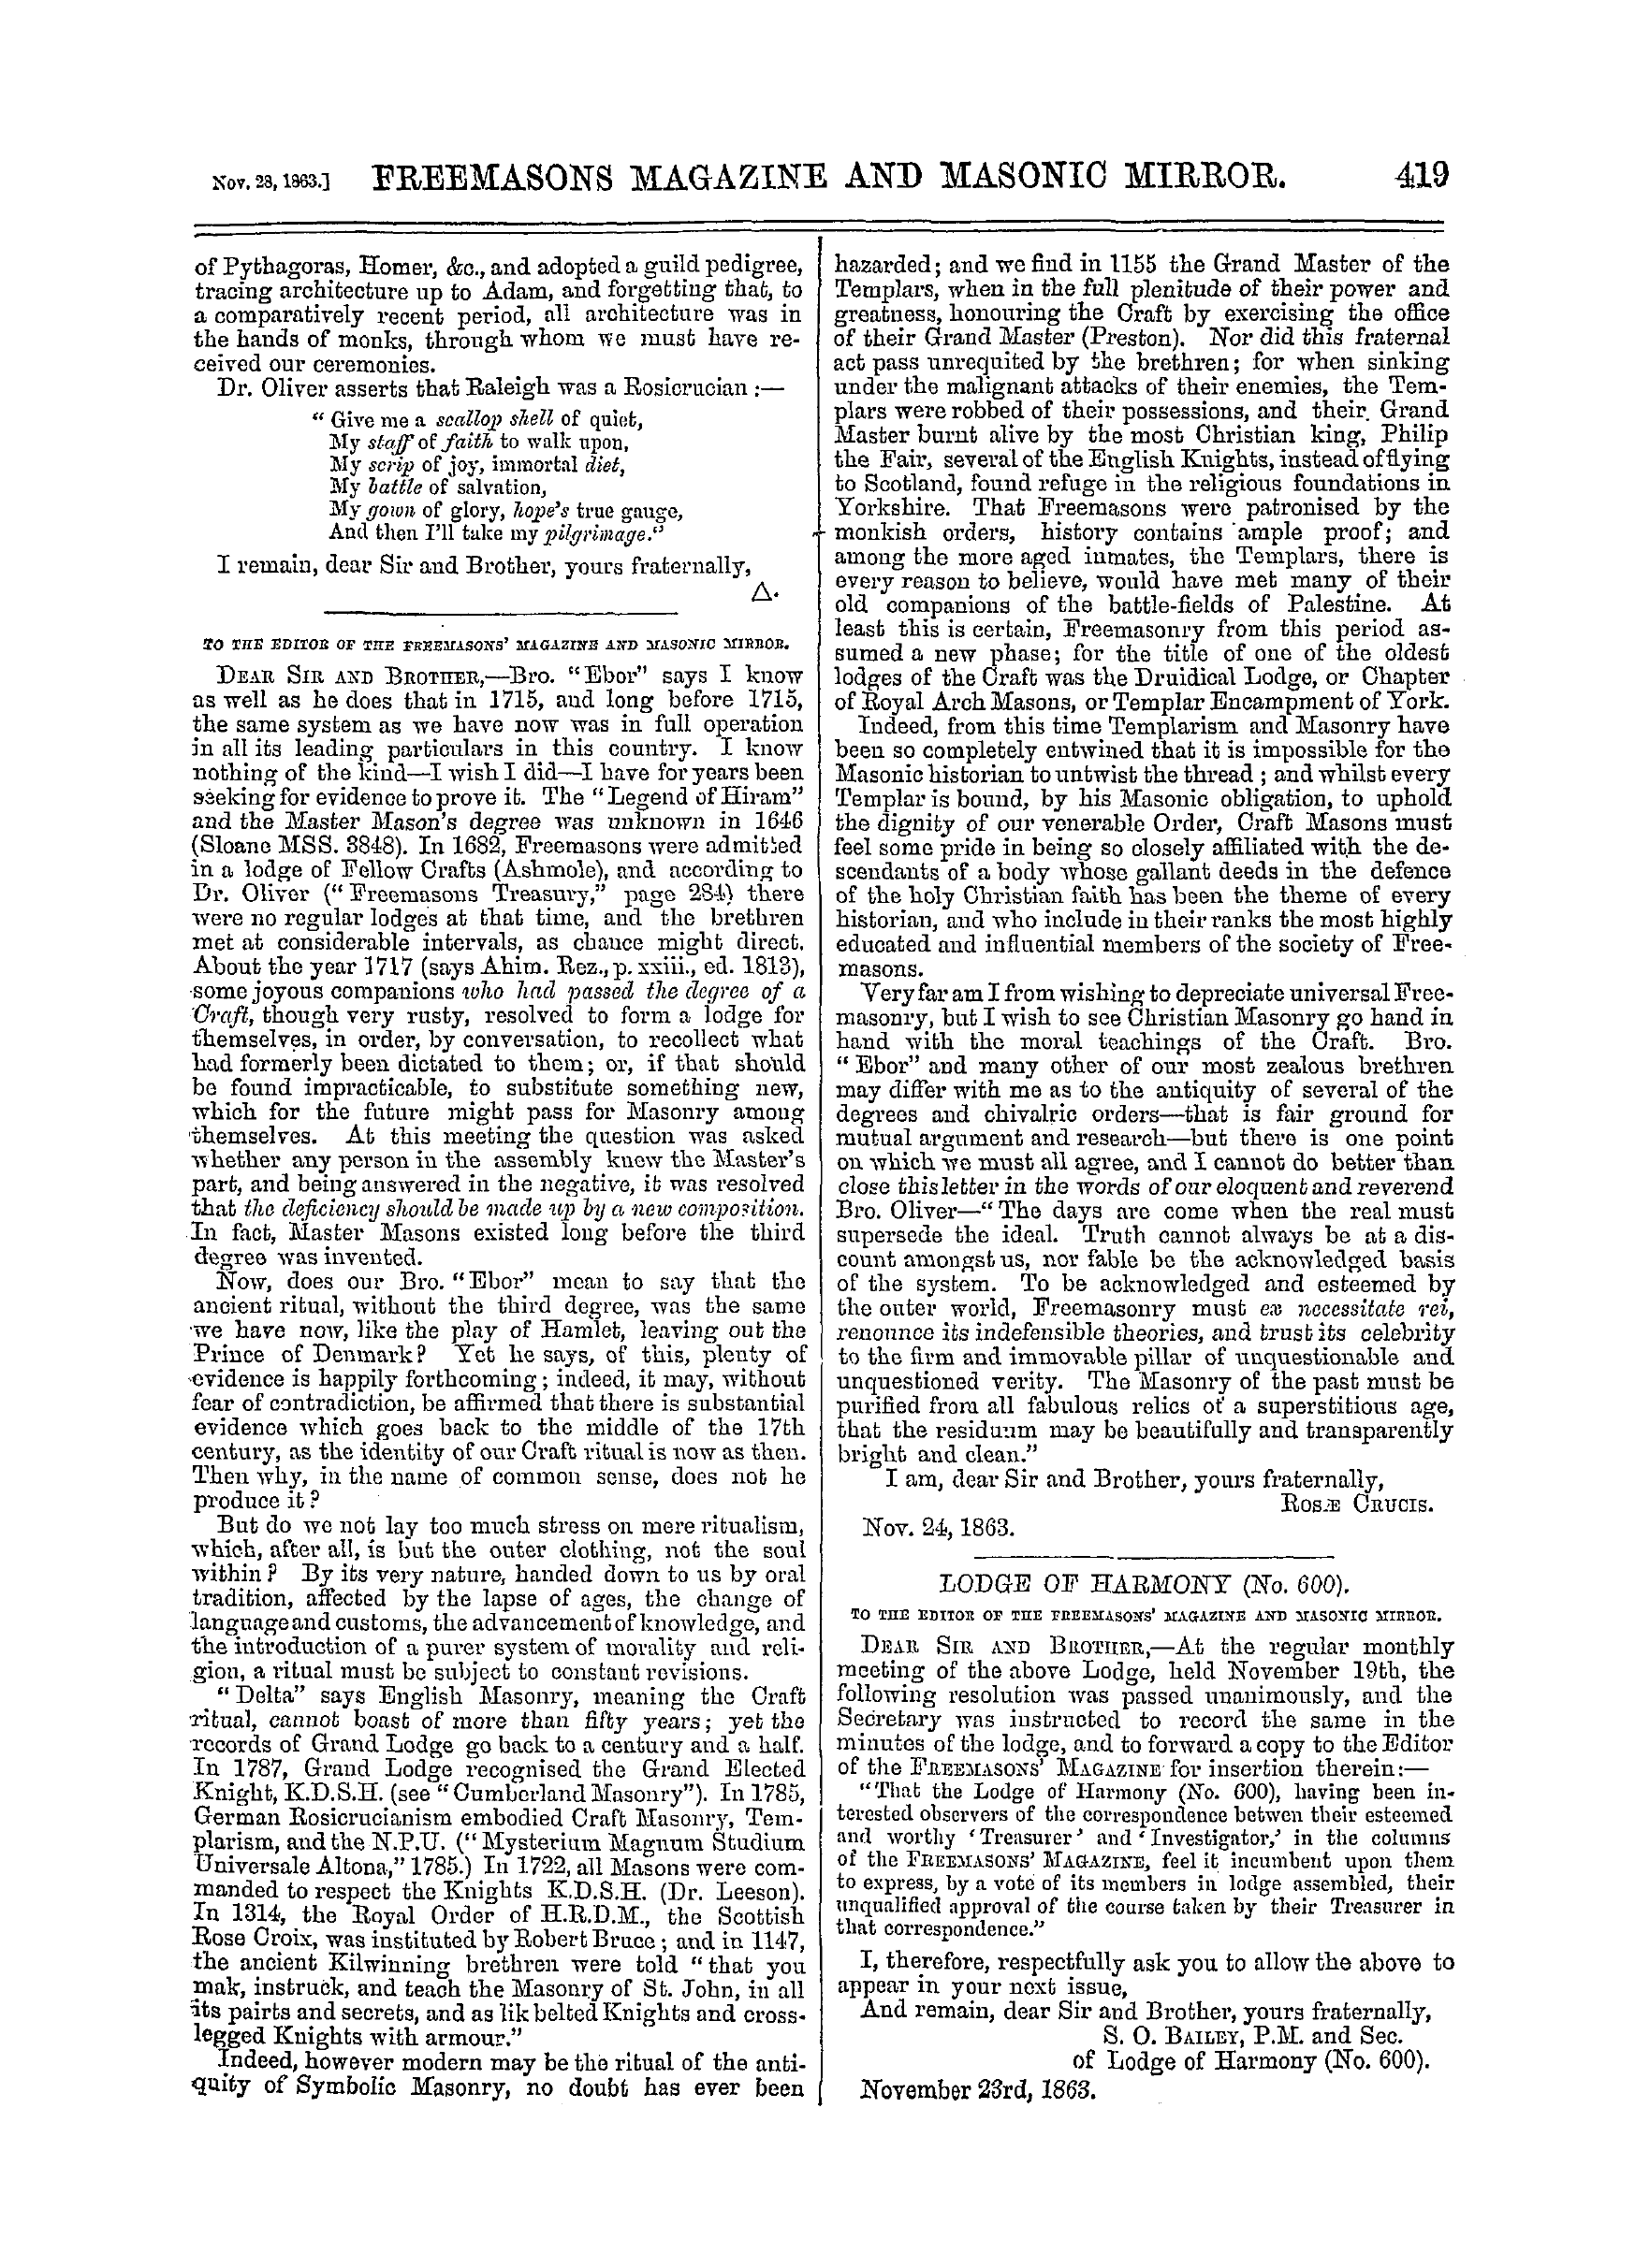 The Freemasons' Monthly Magazine: 1863-11-28: 7